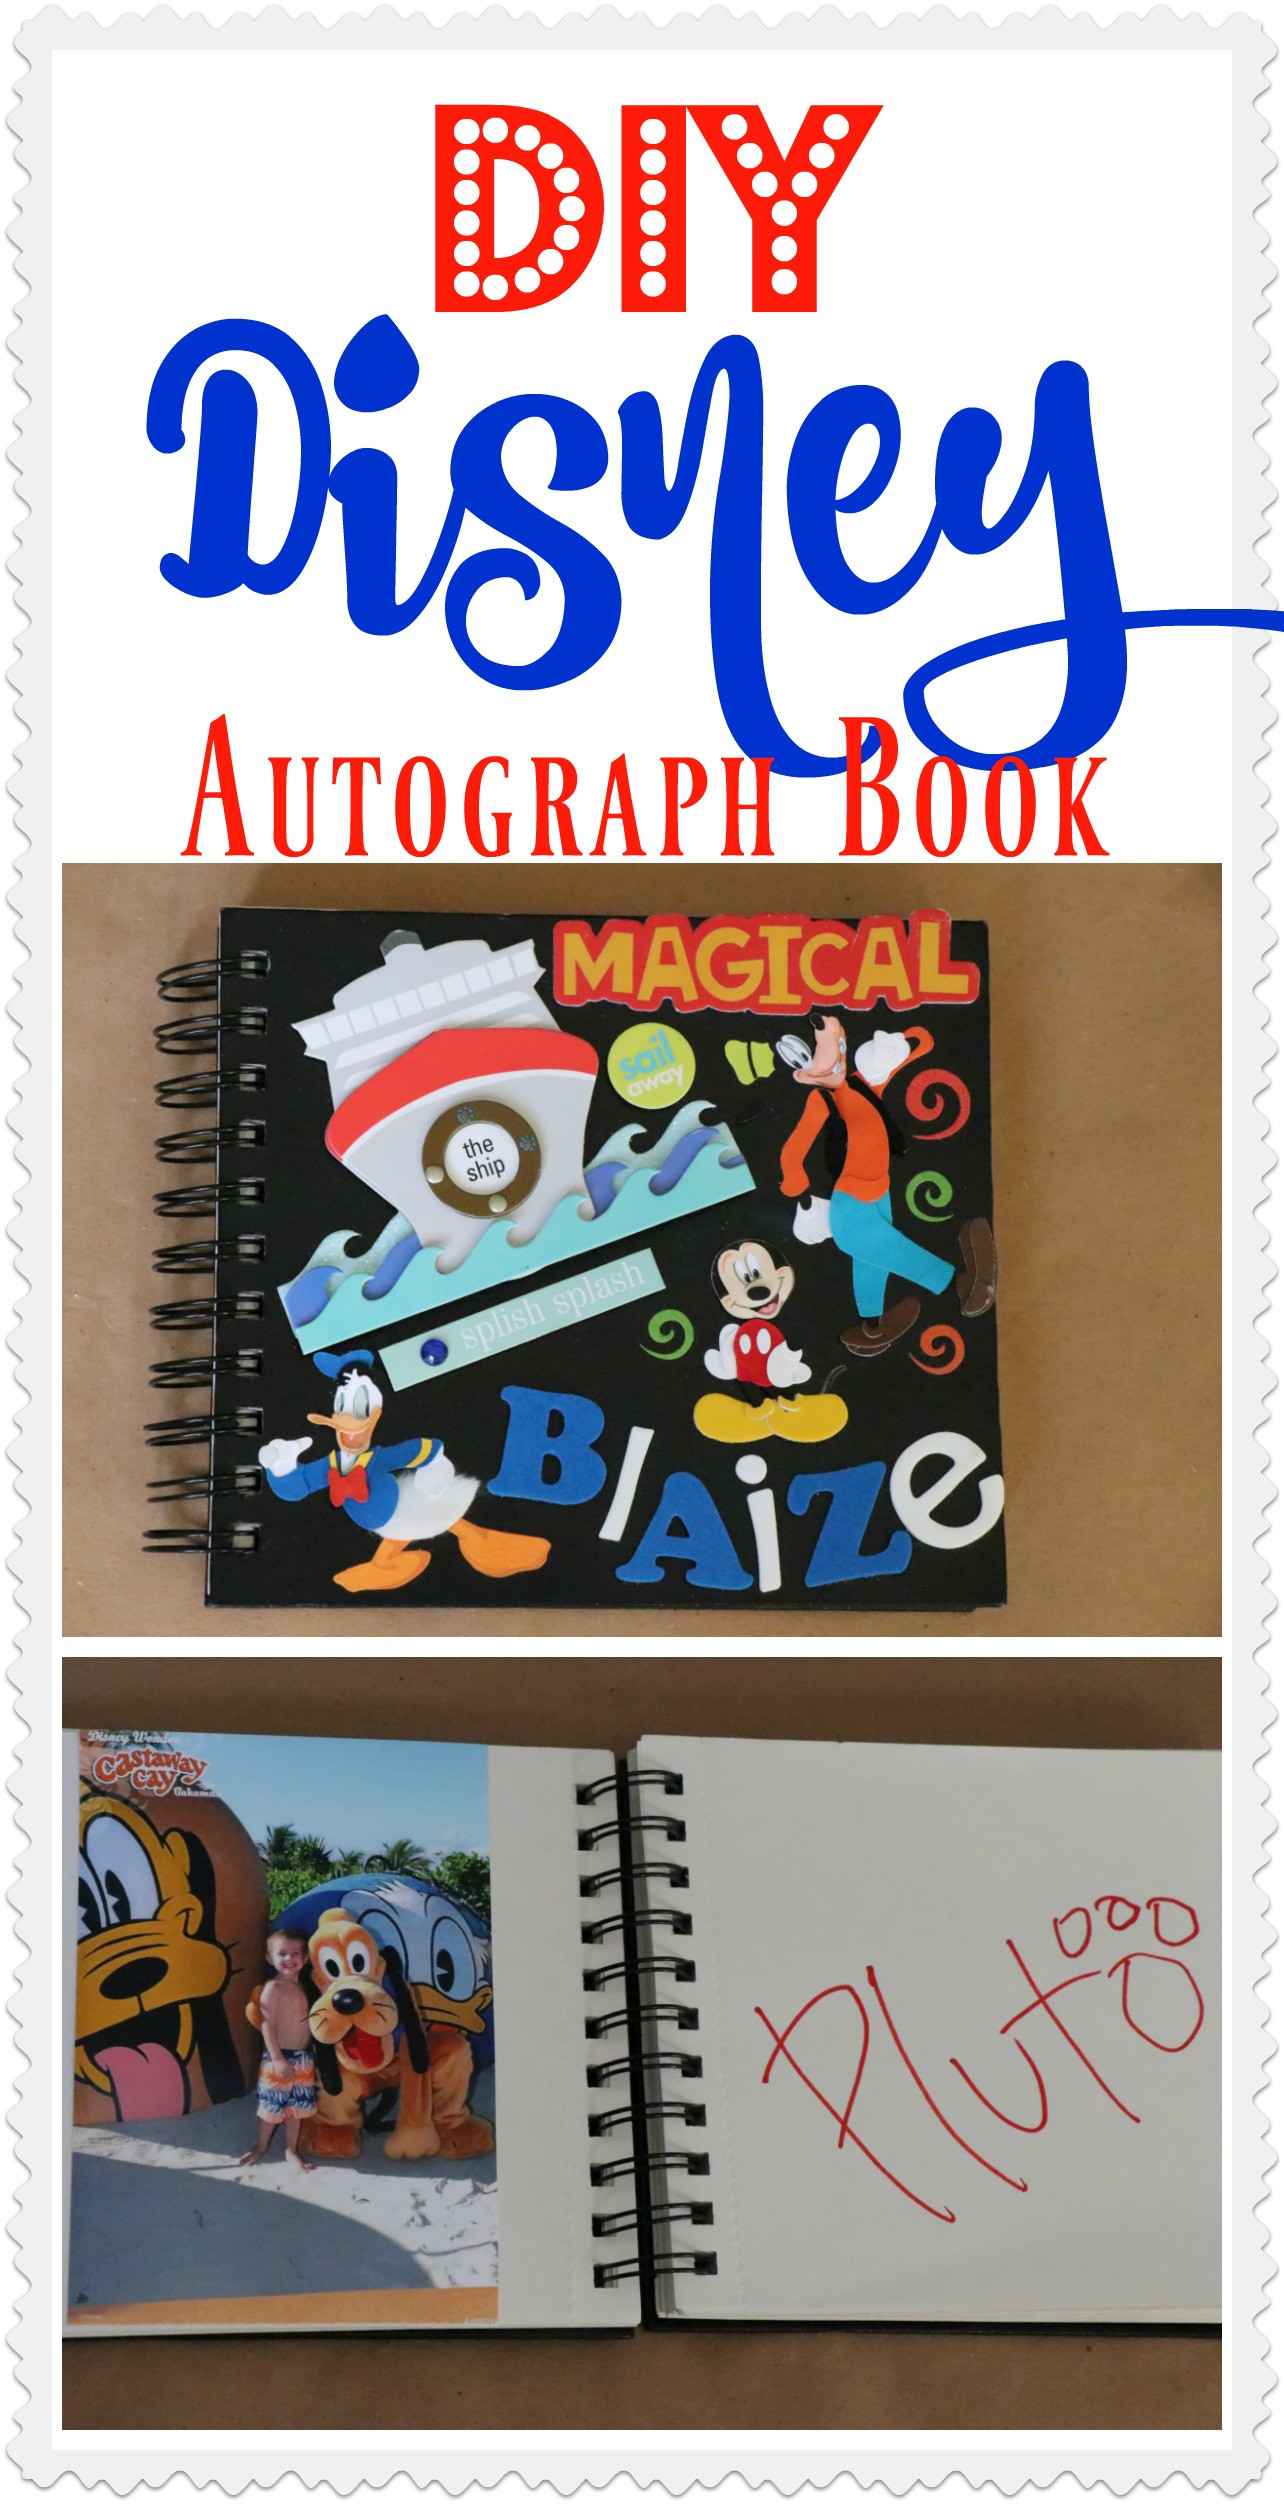 Best ideas about DIY Disney Autograph Book
. Save or Pin DIY Disney Autograph Book Re Fabbed Now.